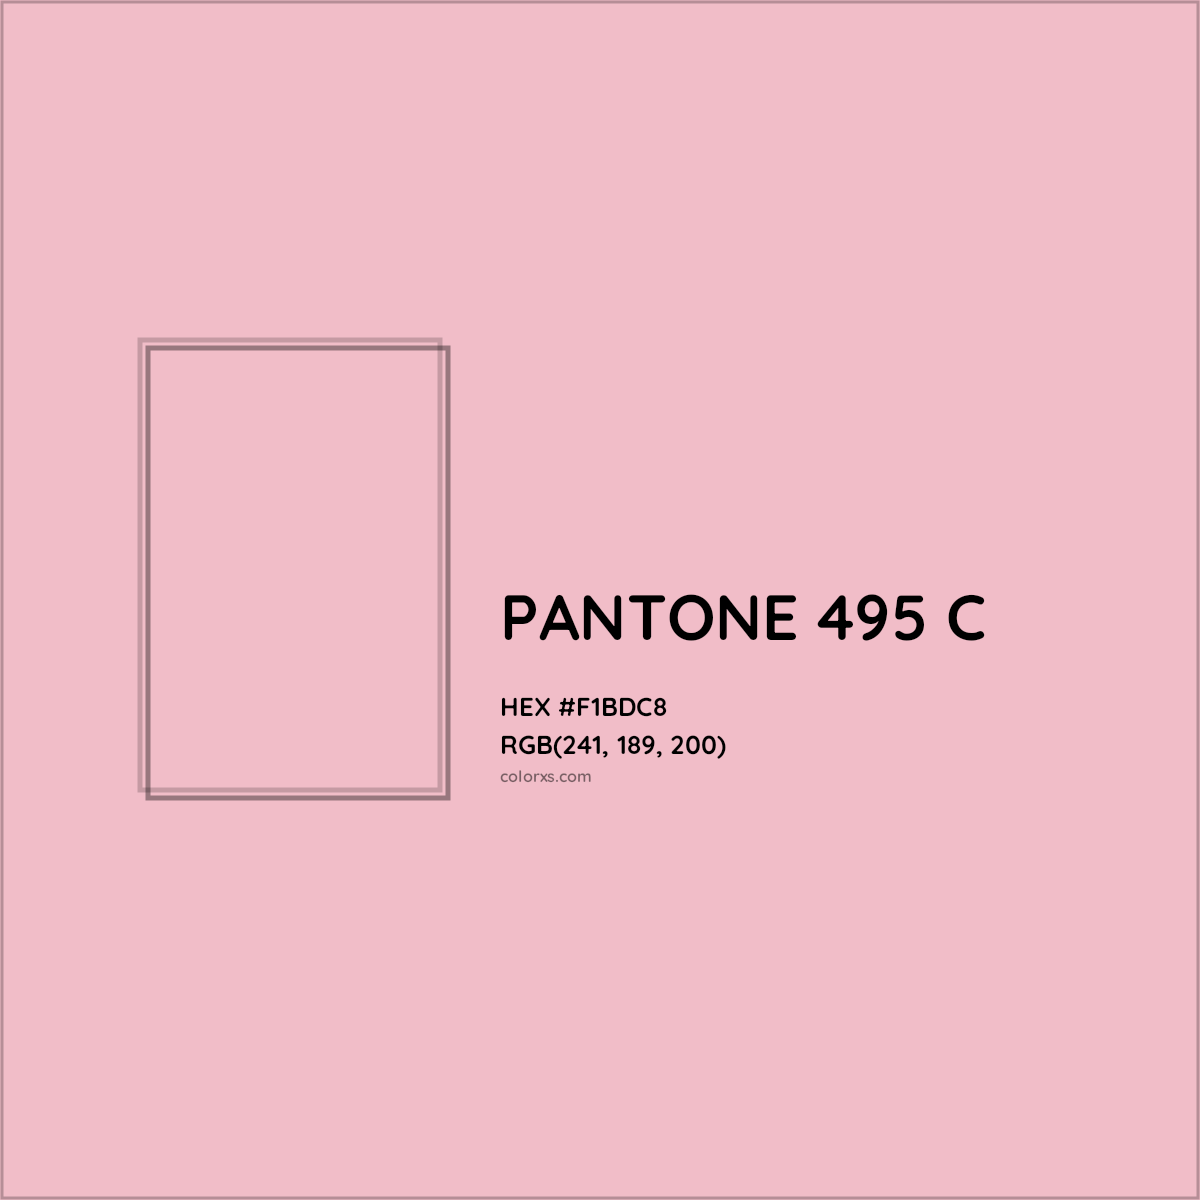 HEX #F1BDC8 PANTONE 495 C CMS Pantone PMS - Color Code